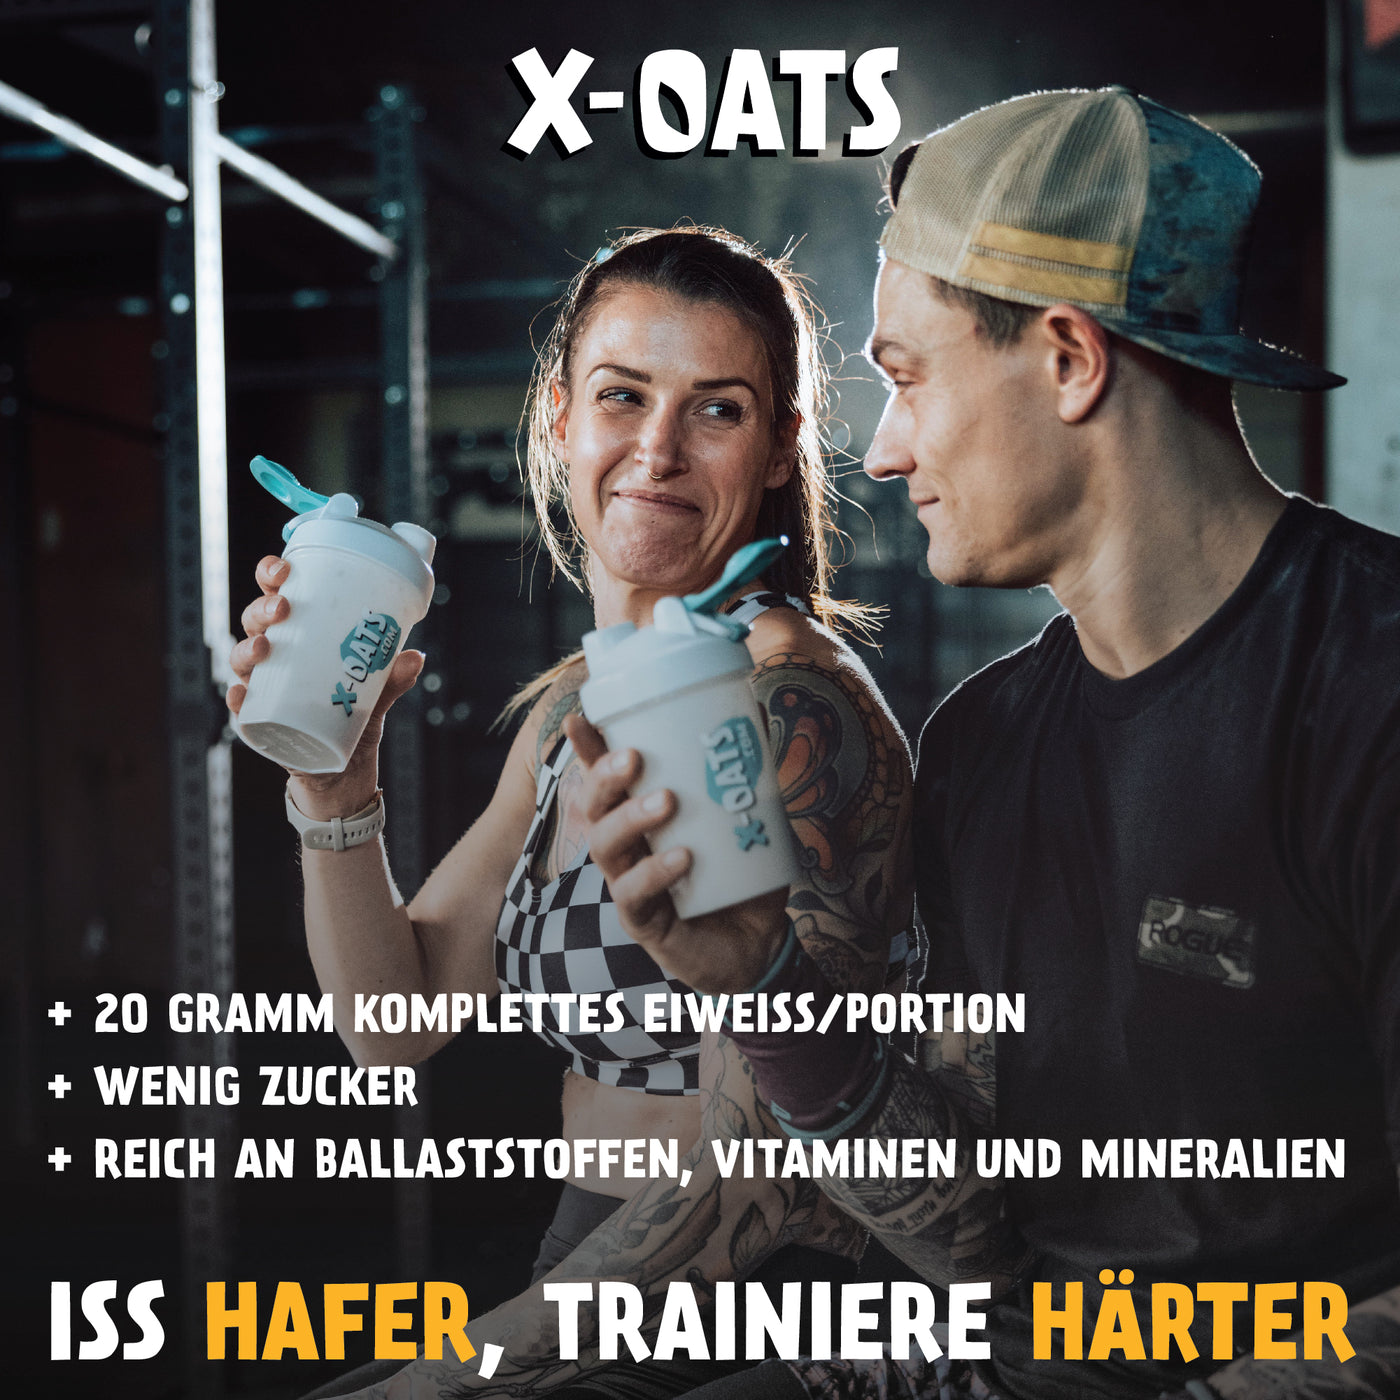 X-OATS® Frühstücksshake 8er Pack